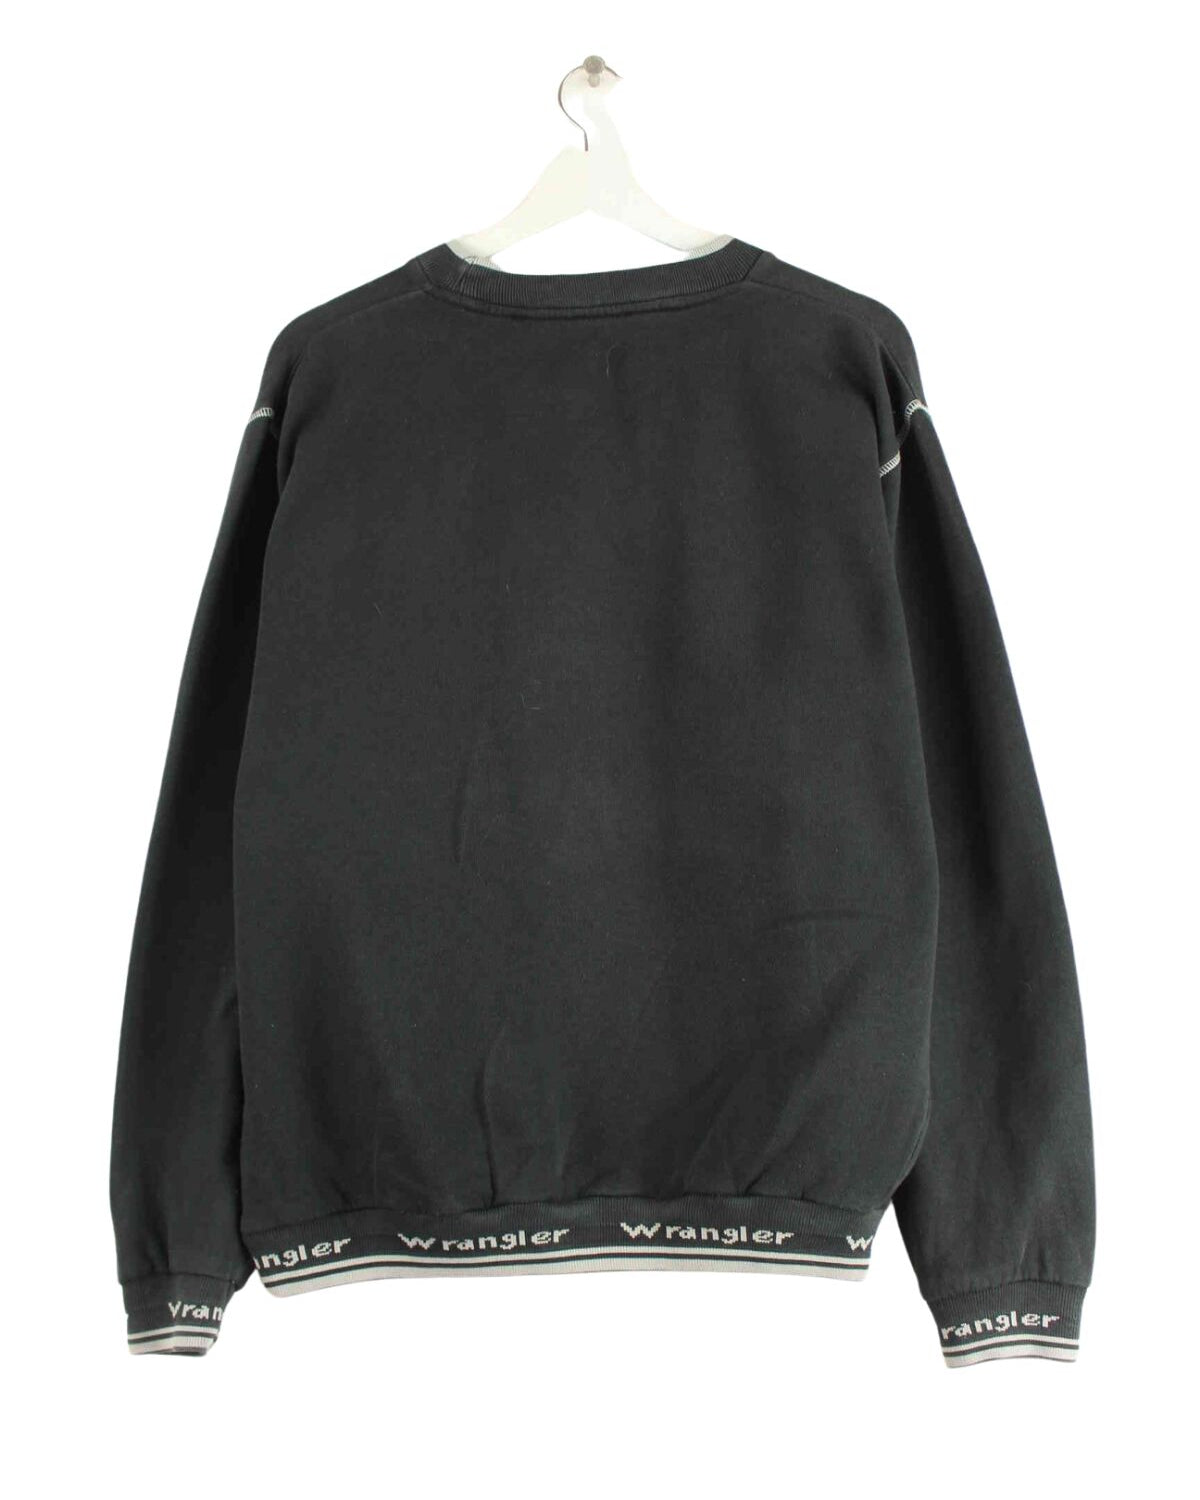 Wrangler 90s Sweater Schwarz S (back image)